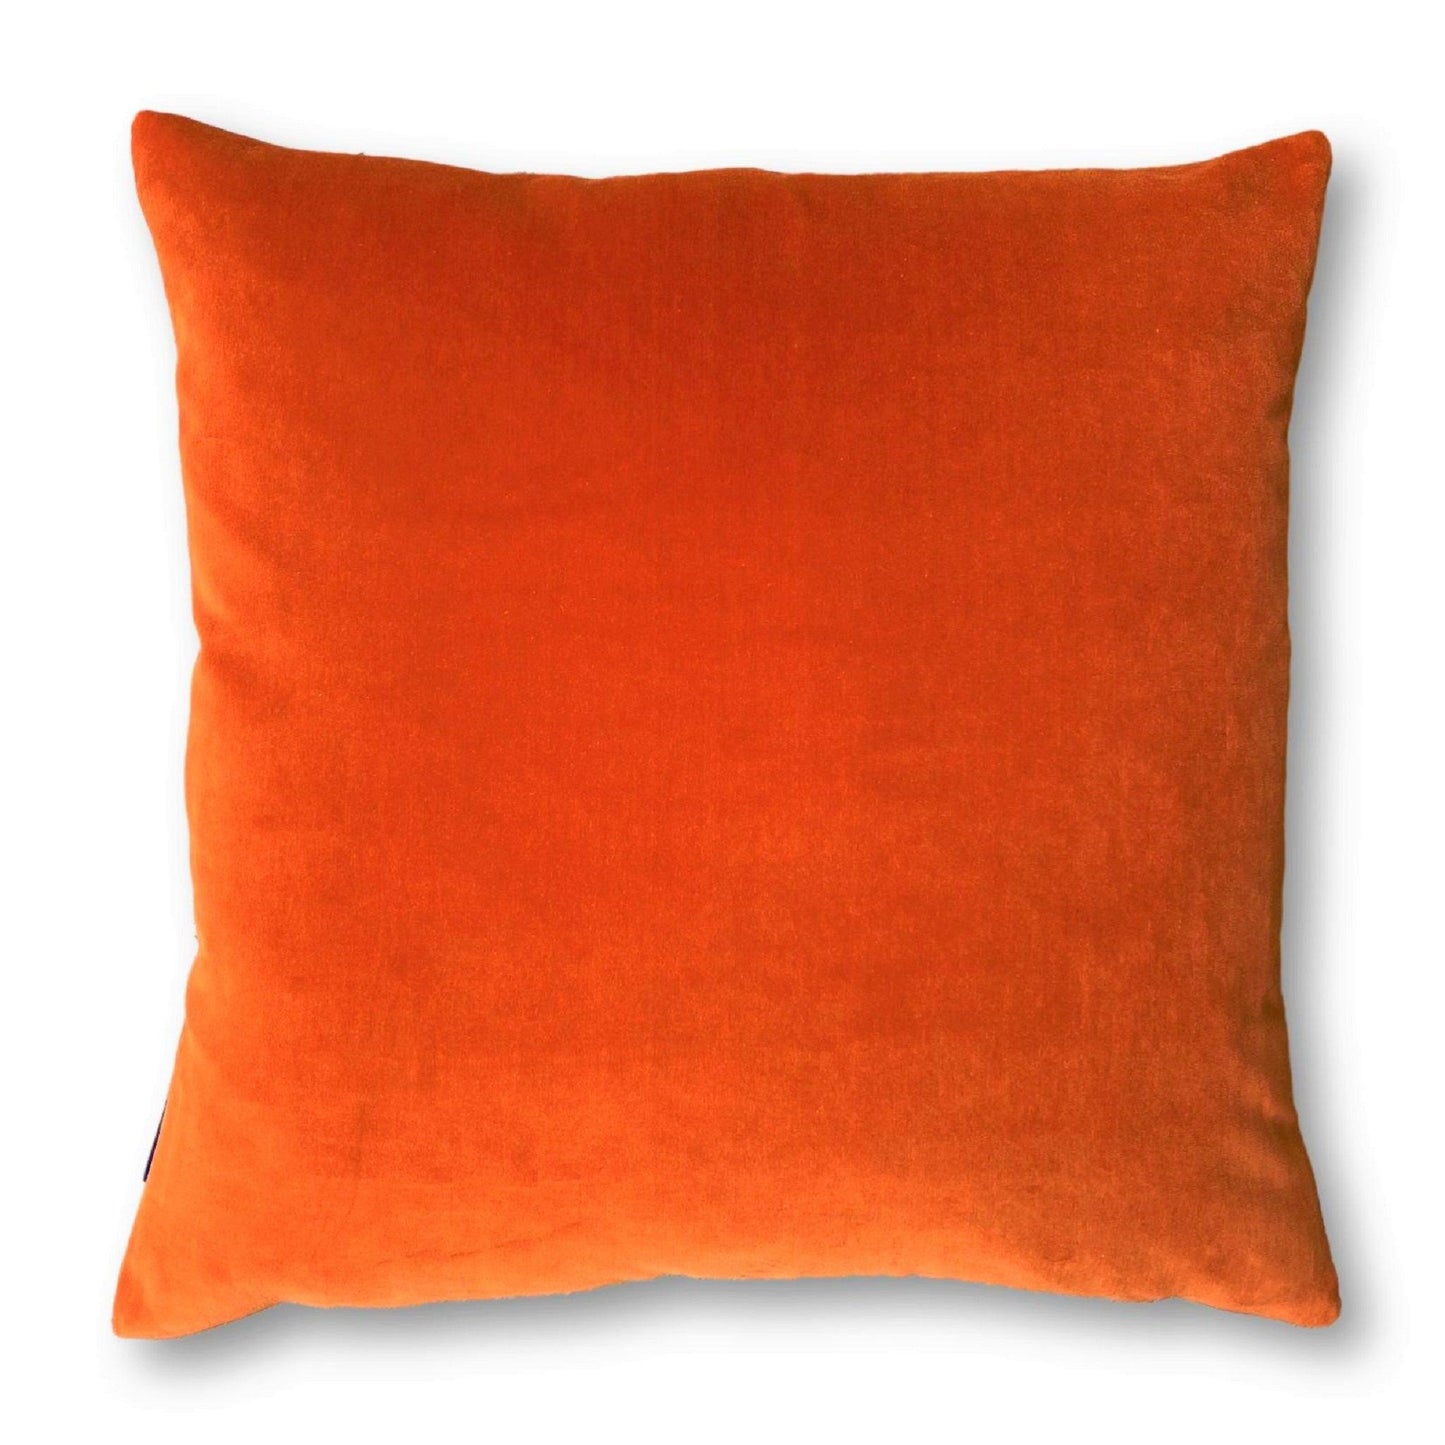 Burnt Orange Velvet Cushion Cover with Dark Grey